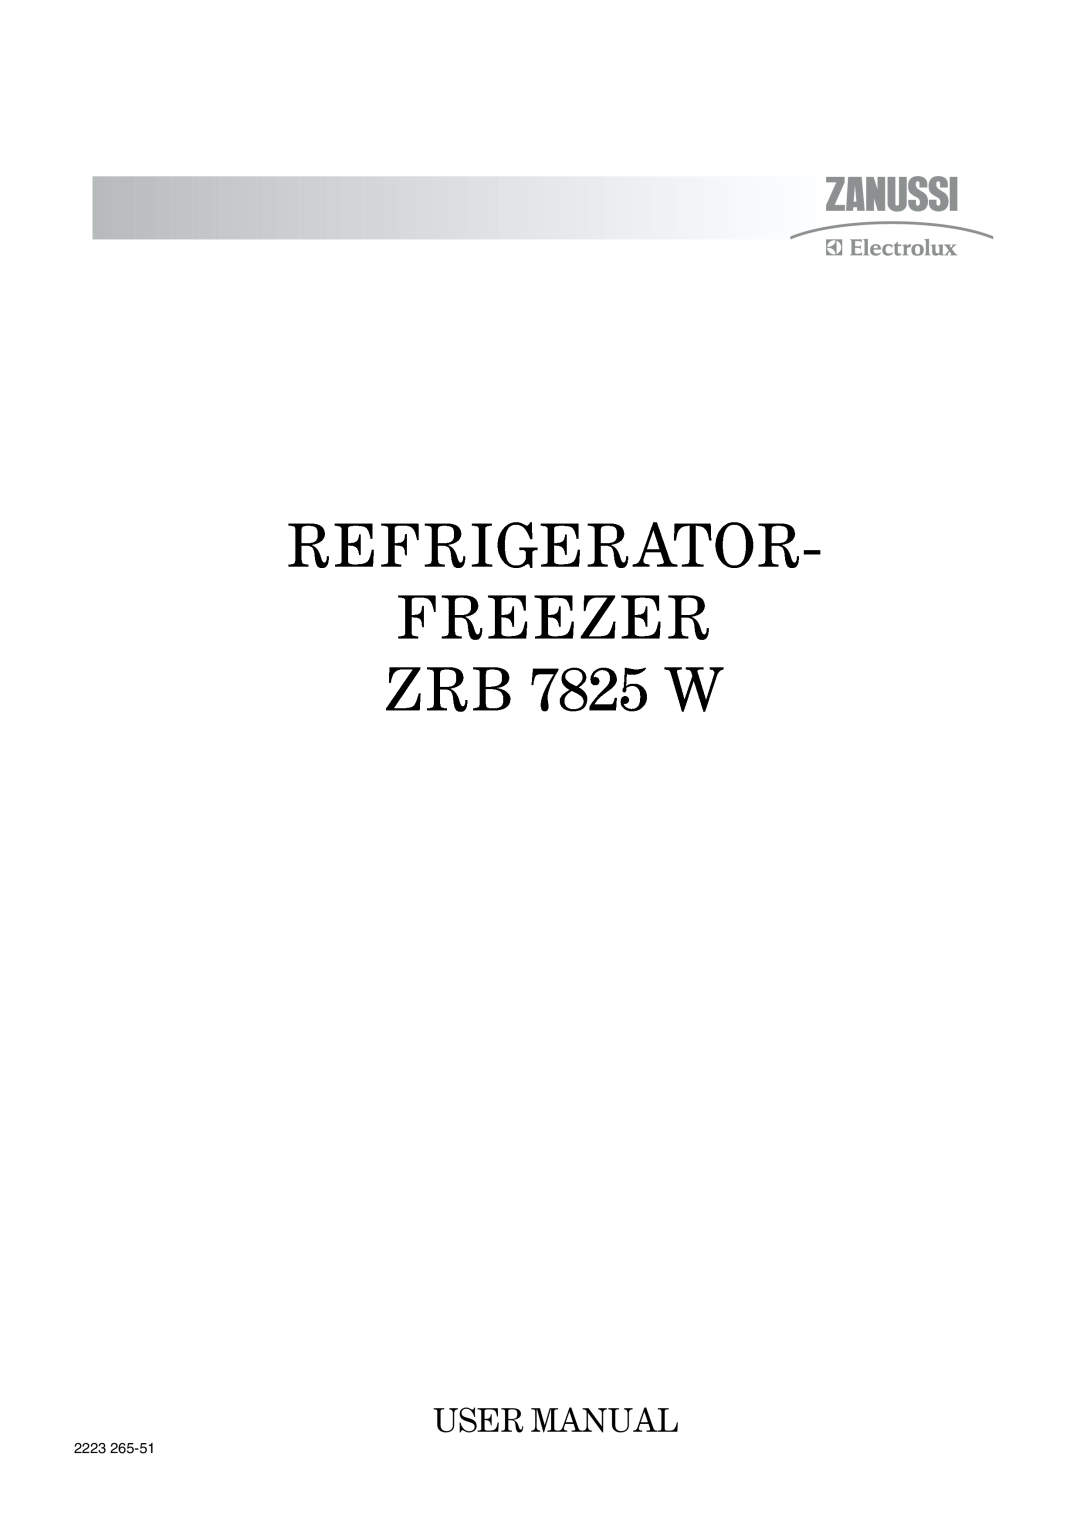 Zanussi user manual REFRIGERATOR FREEZER ZRB 7825 W, 2223 